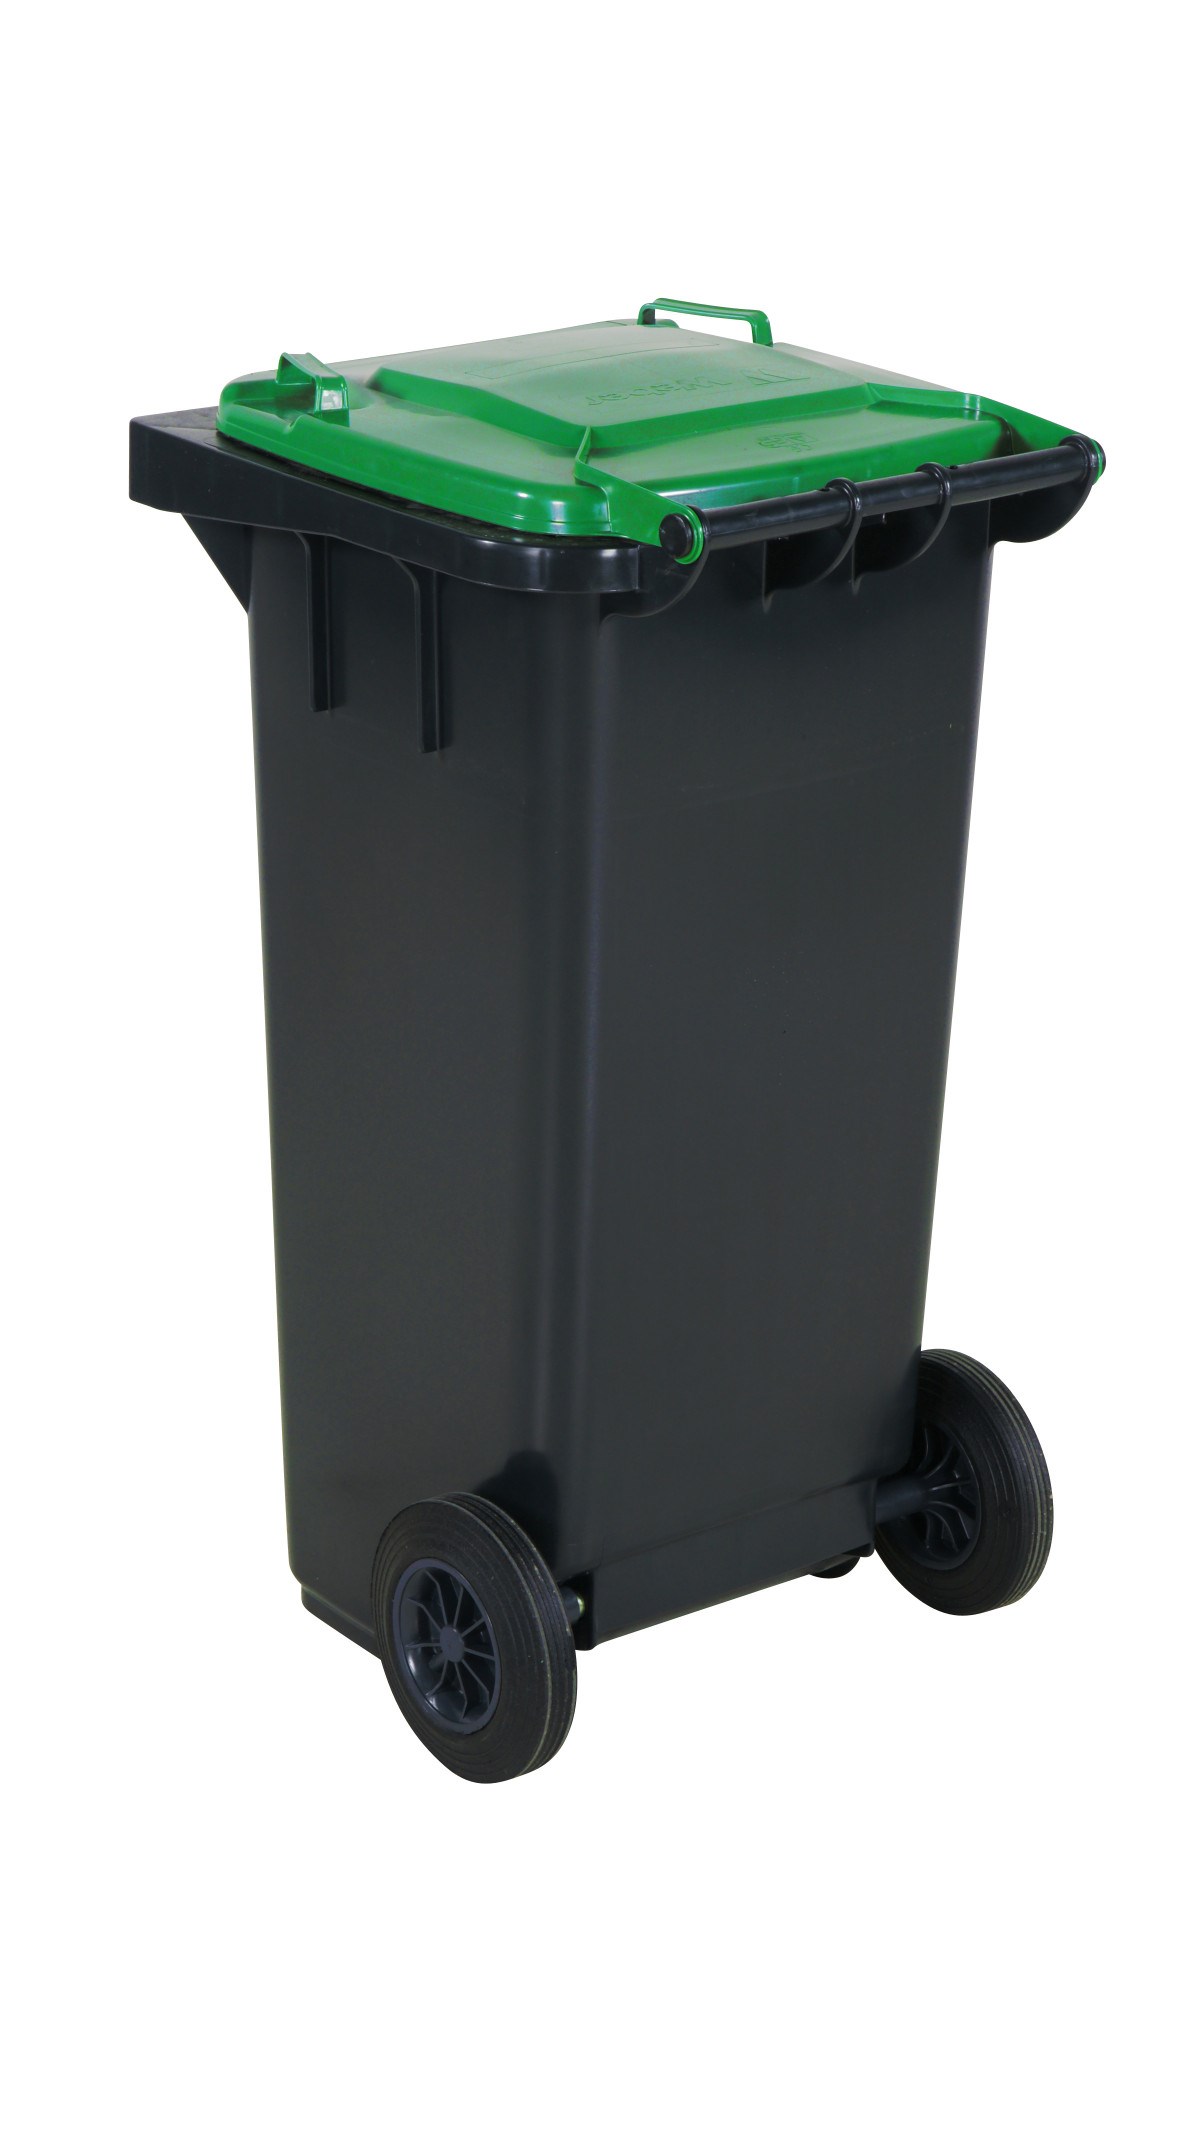 Avfallskärl med färgat Lock, 240 L, Grön